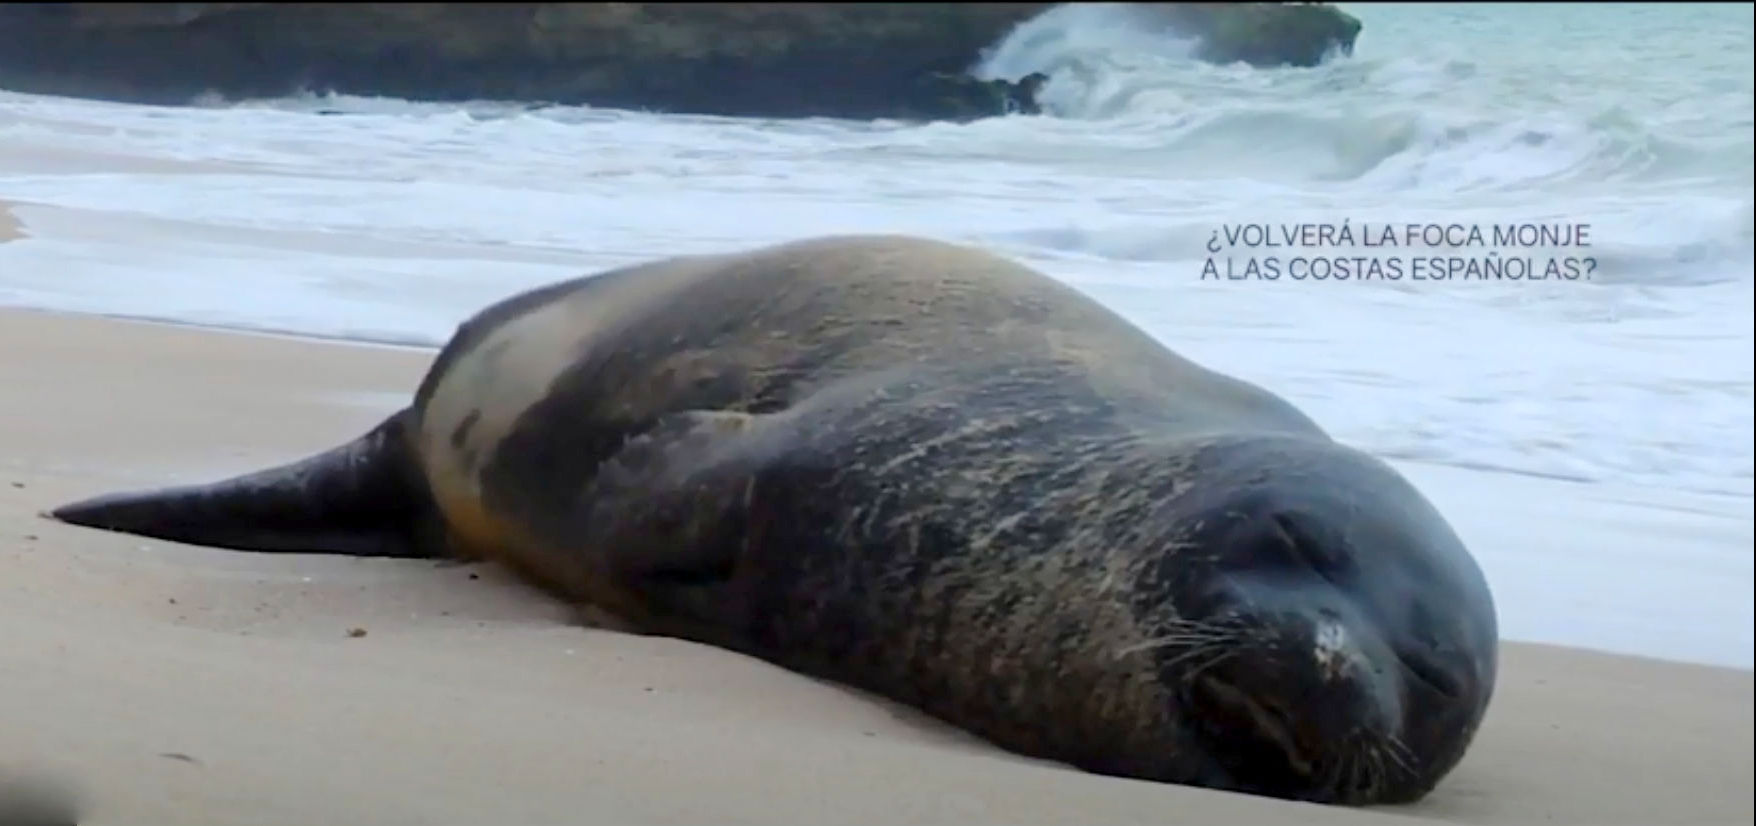 La ULE colaborará en un proyecto de conservación de la foca monje